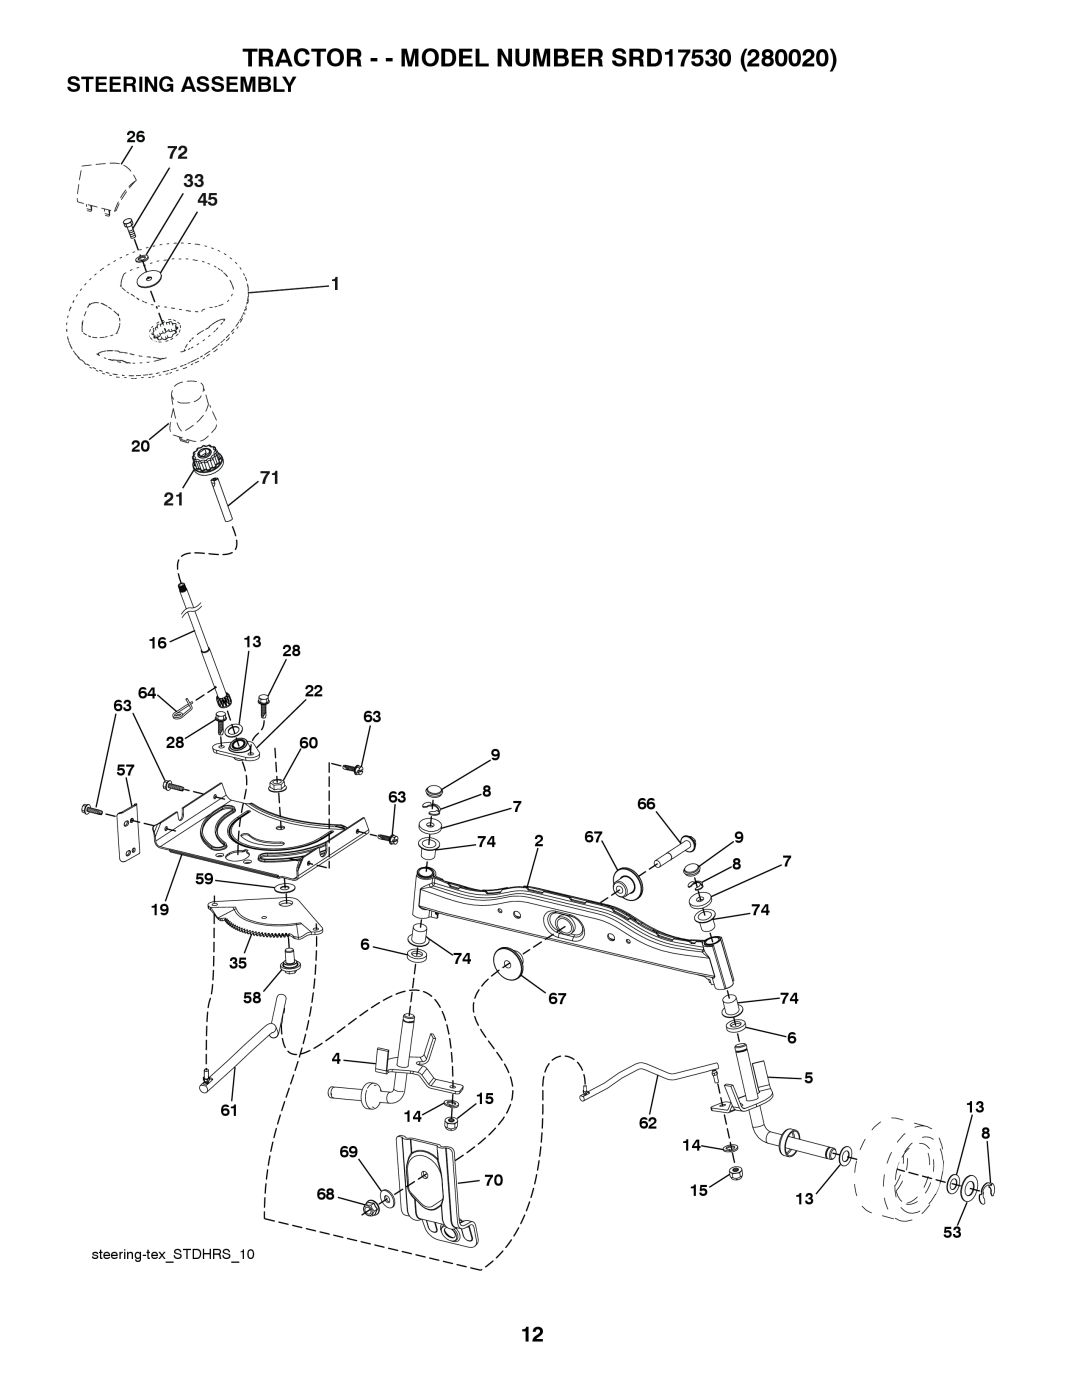 Husqvarna SRD17530 (280020) manual Steering Assembly, TRACTOR - - MODEL NUMBER SRD17530, steering-texSTDHRS10 